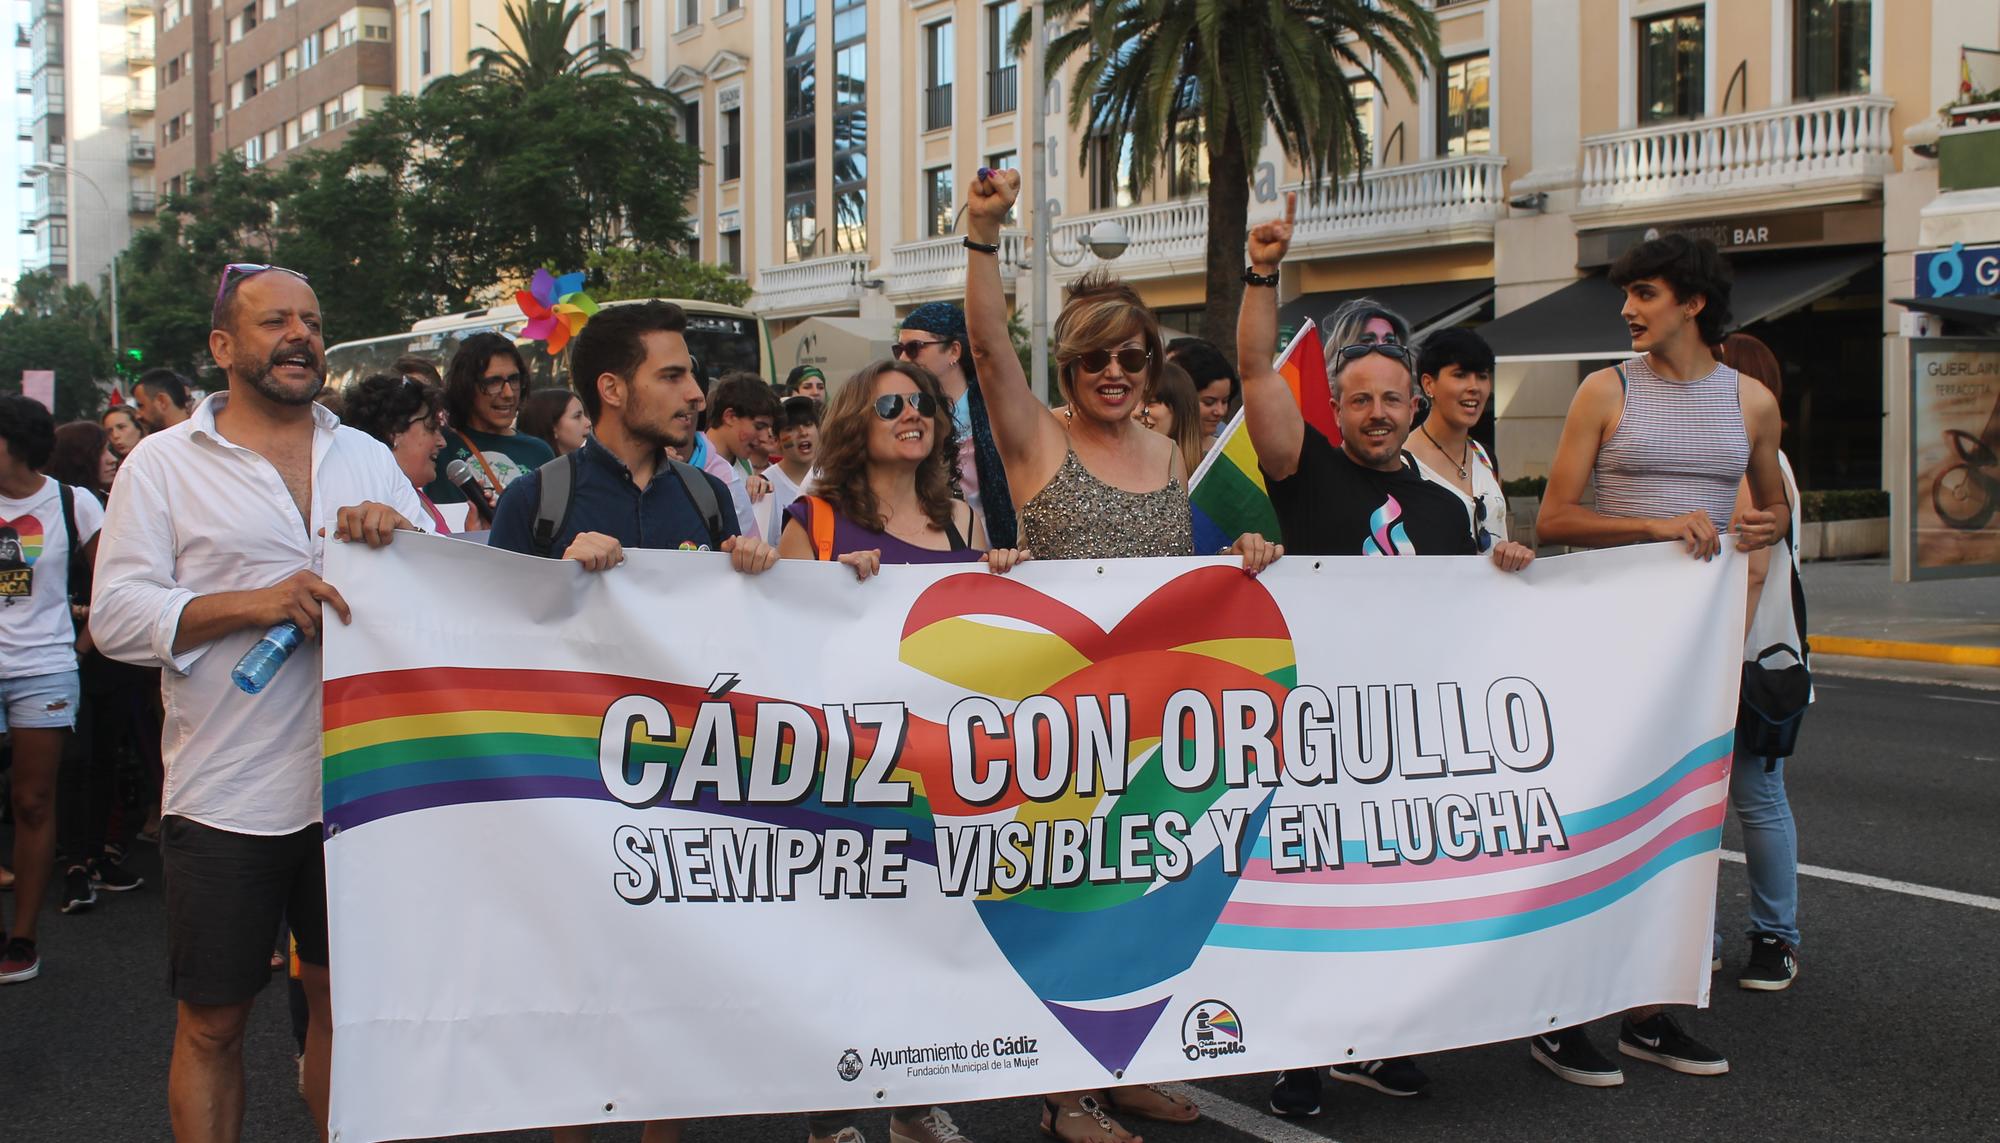 Cambrolle Orgullo Cádiz